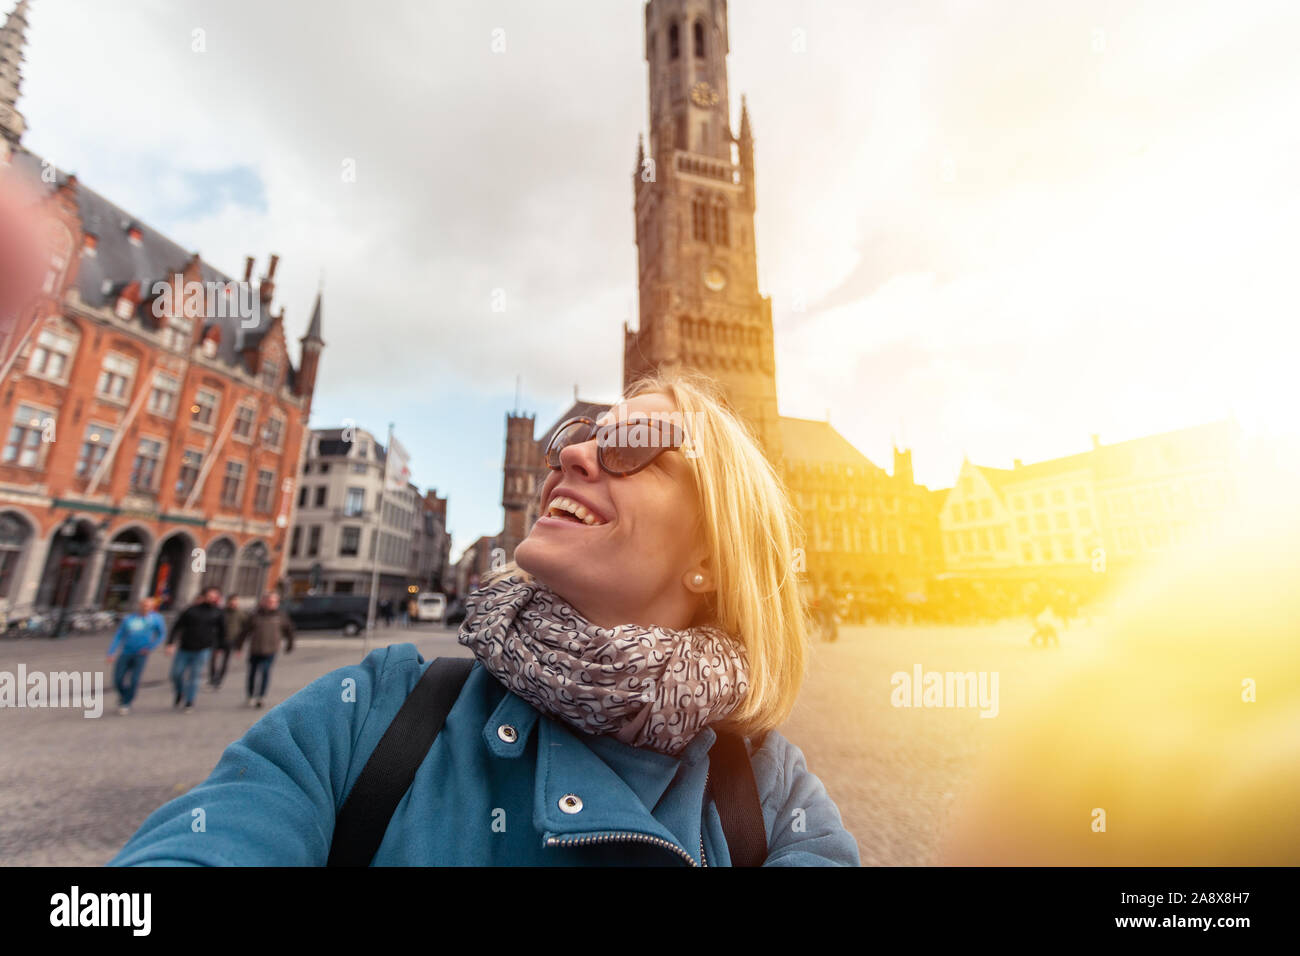 Mujer en la plaza del mercado central de Brujas, Bélgica Foto de stock